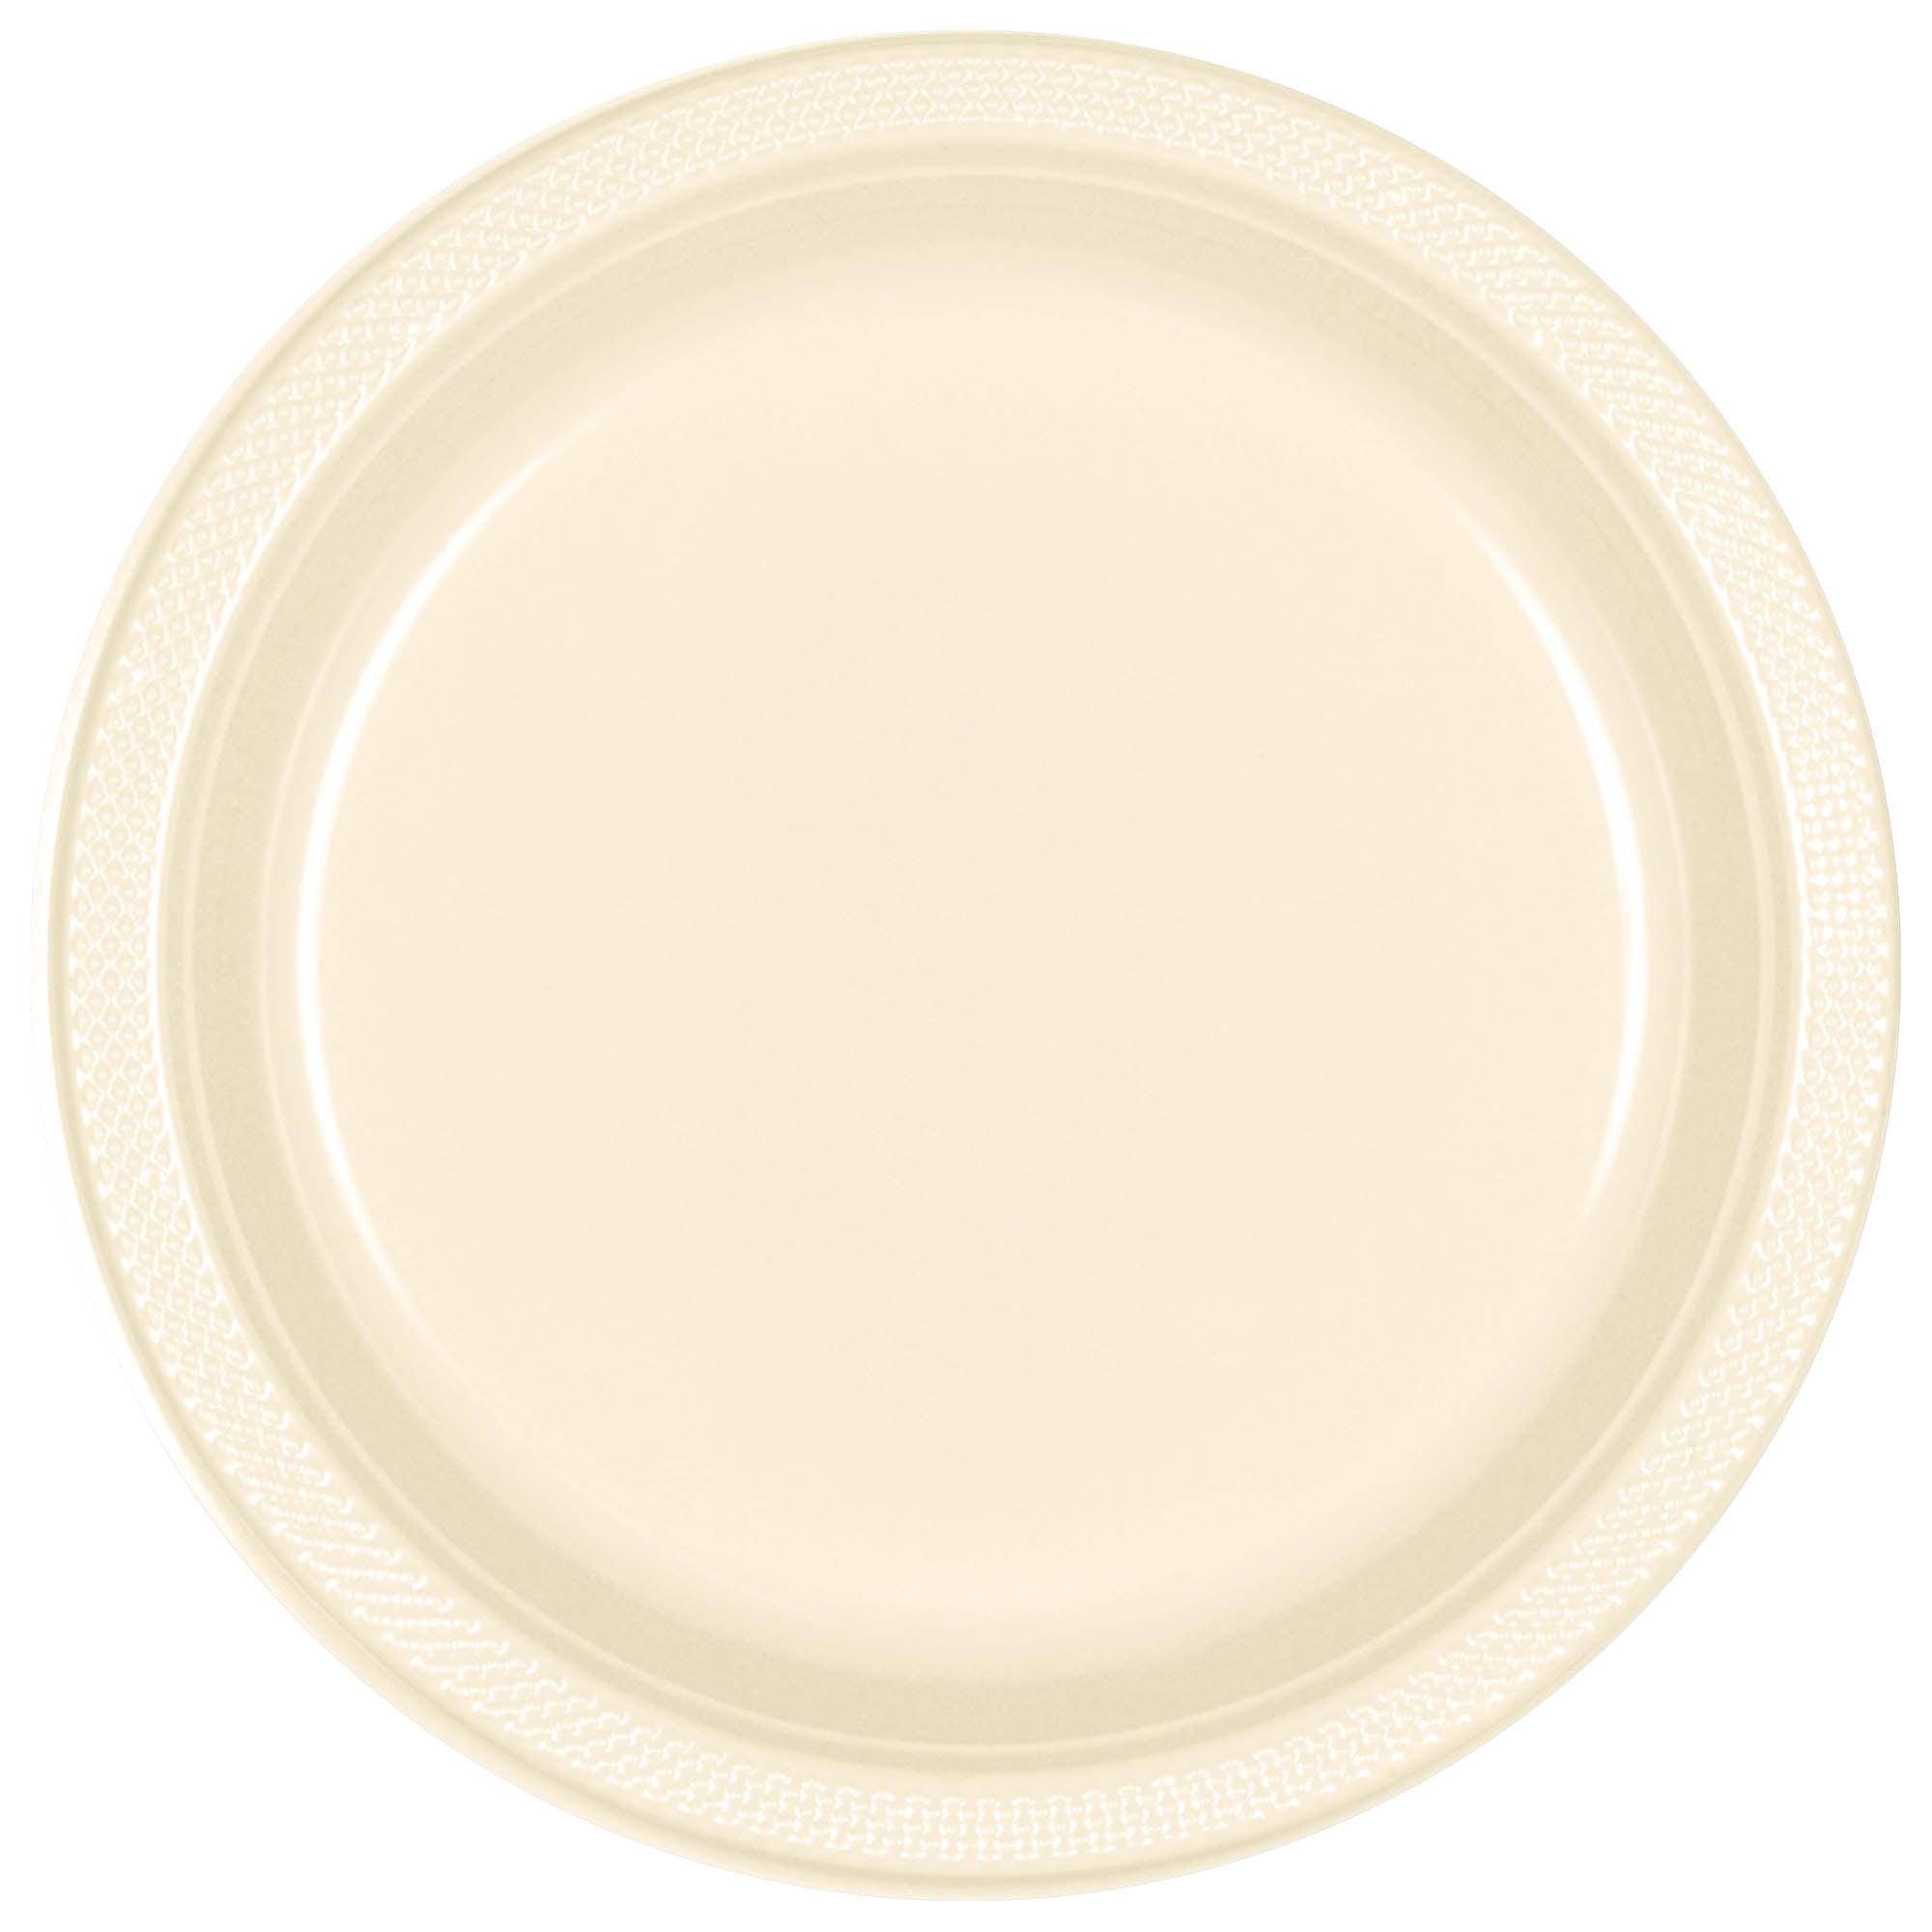 Round Plastic Plates  Vanilla   20 pcs  7in